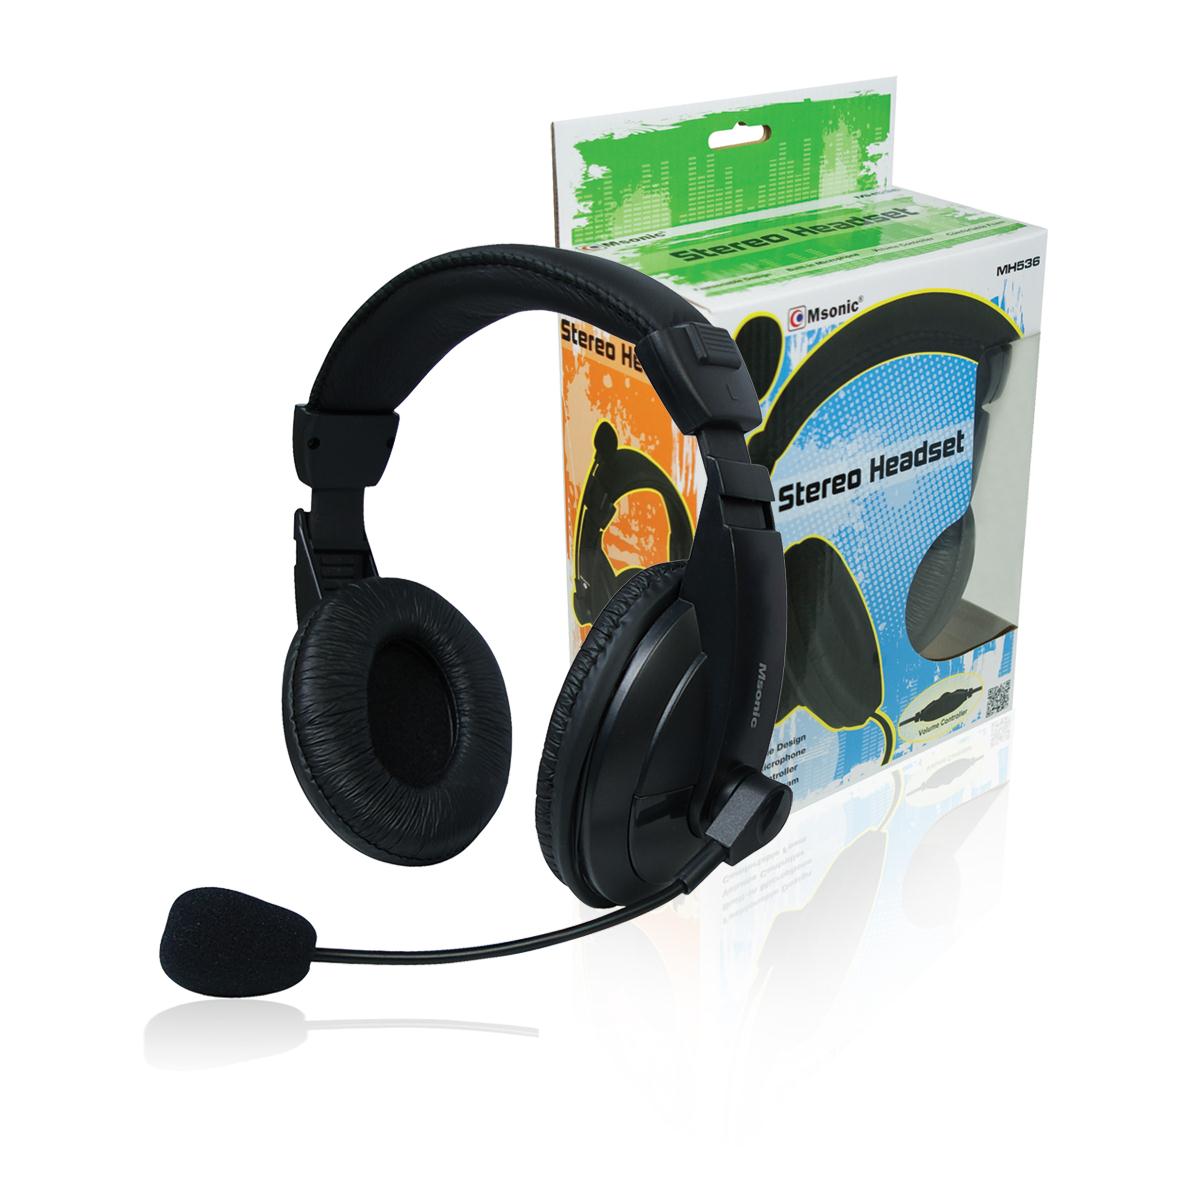 Ακουστικά Msonic MH 536 με μικρόφωνο σε μαύρο χρώμα υψηλής αντοχής